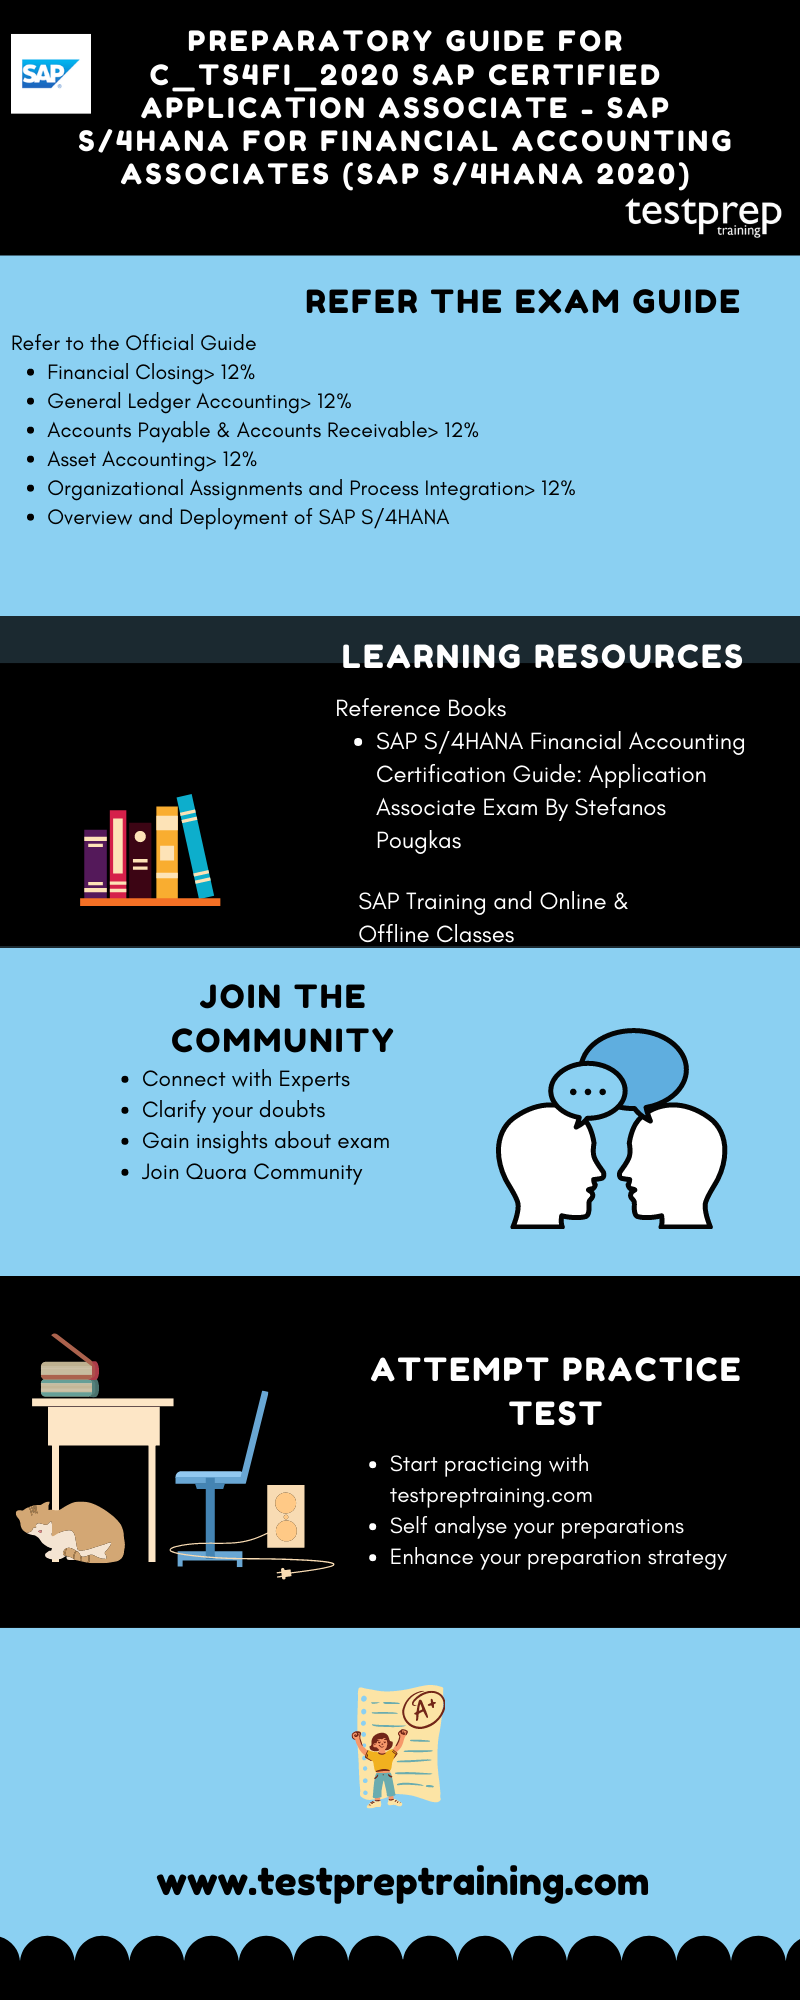  SAP S/4HANA for Financial Accounting Associates (SAP S/4HANA 2020)  preparatory guide